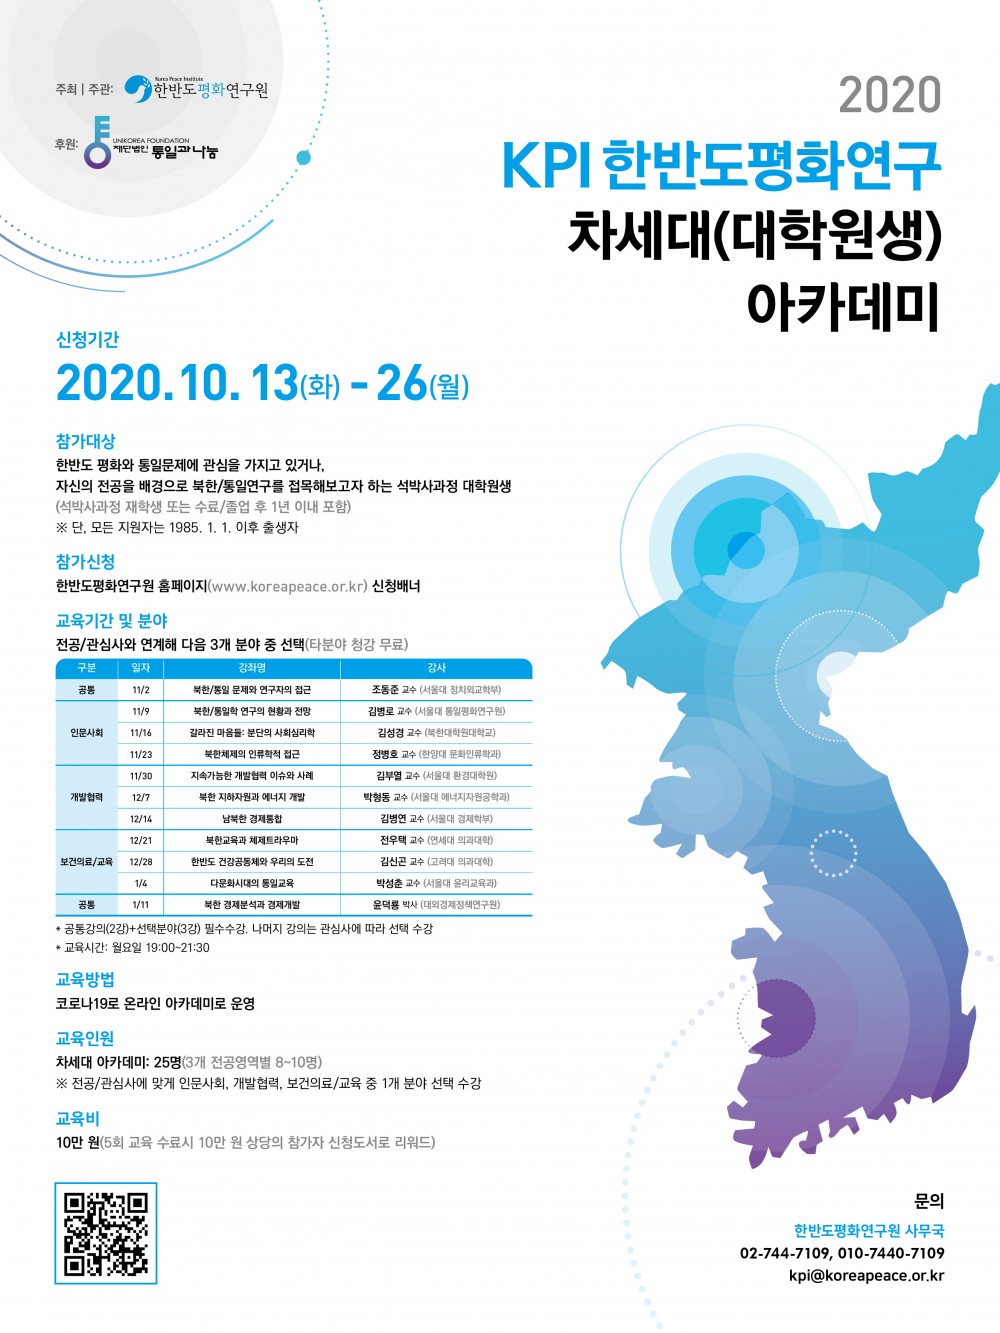 2010 KPI 차세대 아카데미 포스터 최종_450X600